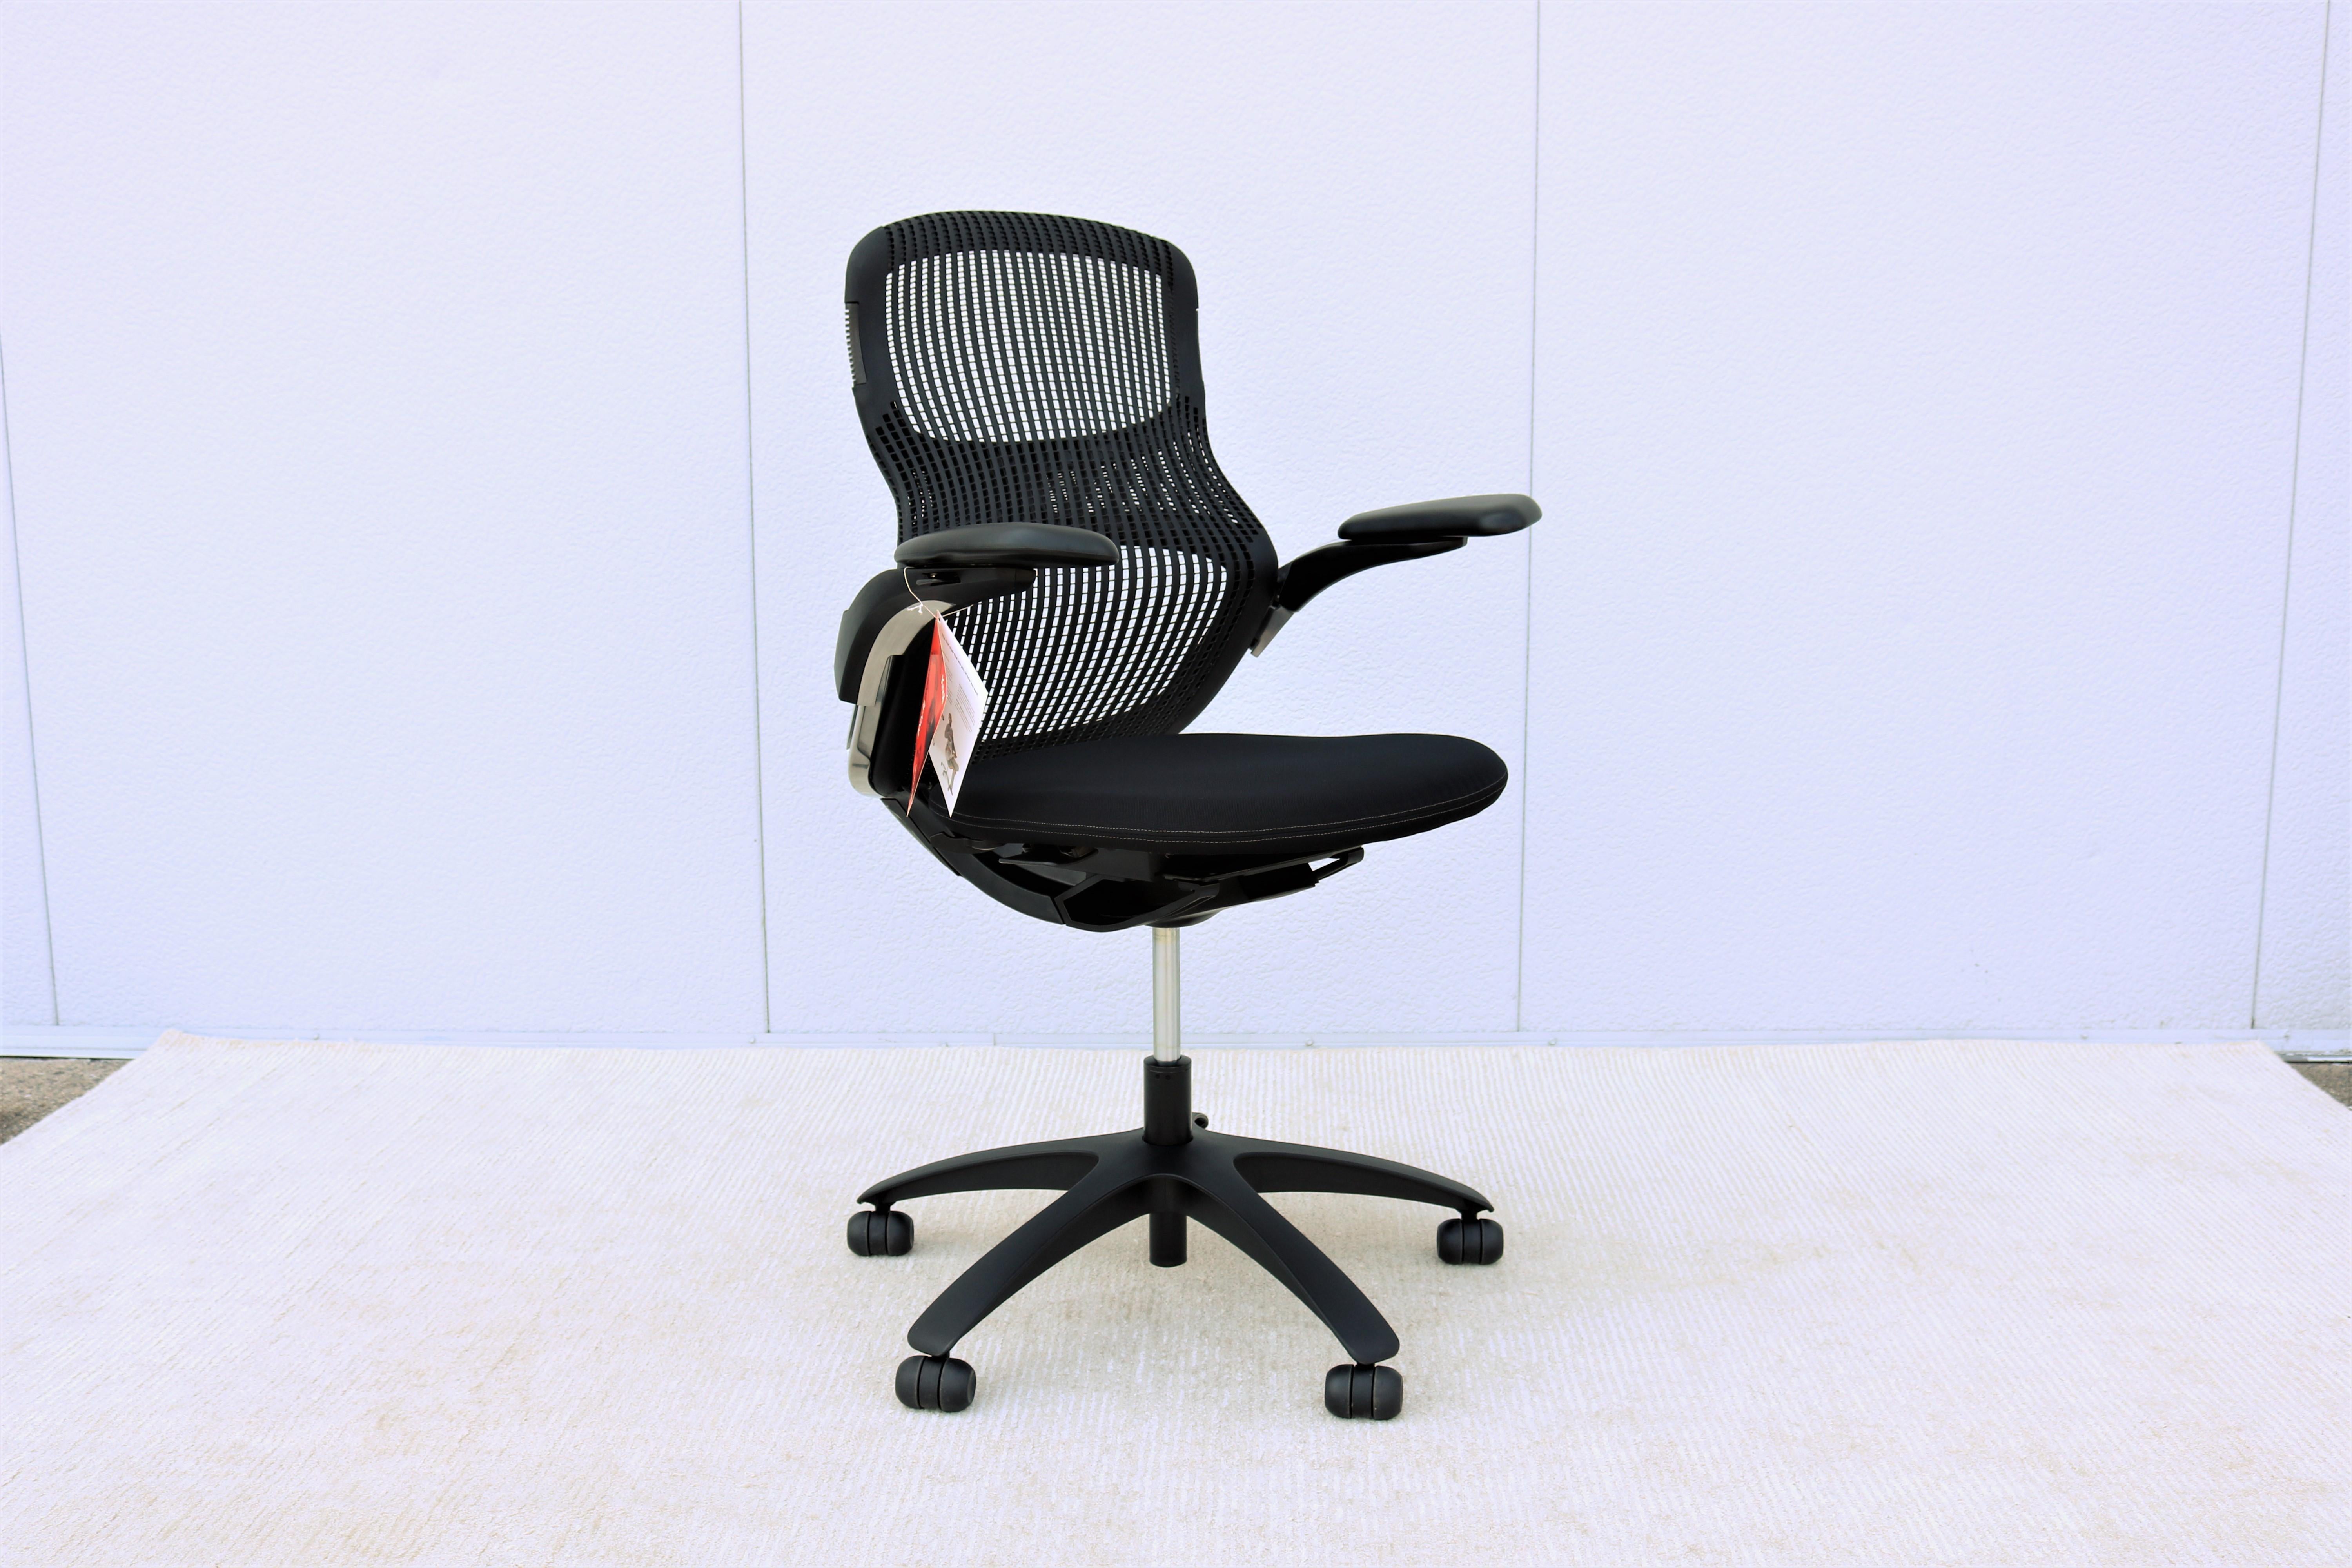 Knoll Generation schwarzer ergonomischer Bürostuhl voll verstellbar, brandneu.
Generation von Knoll ist ein preisgekrönter Bürostuhl, der einen neuen Standard an Komfort und uneingeschränkter Bewegung für jeden bietet, der auf ihm sitzt, und der es